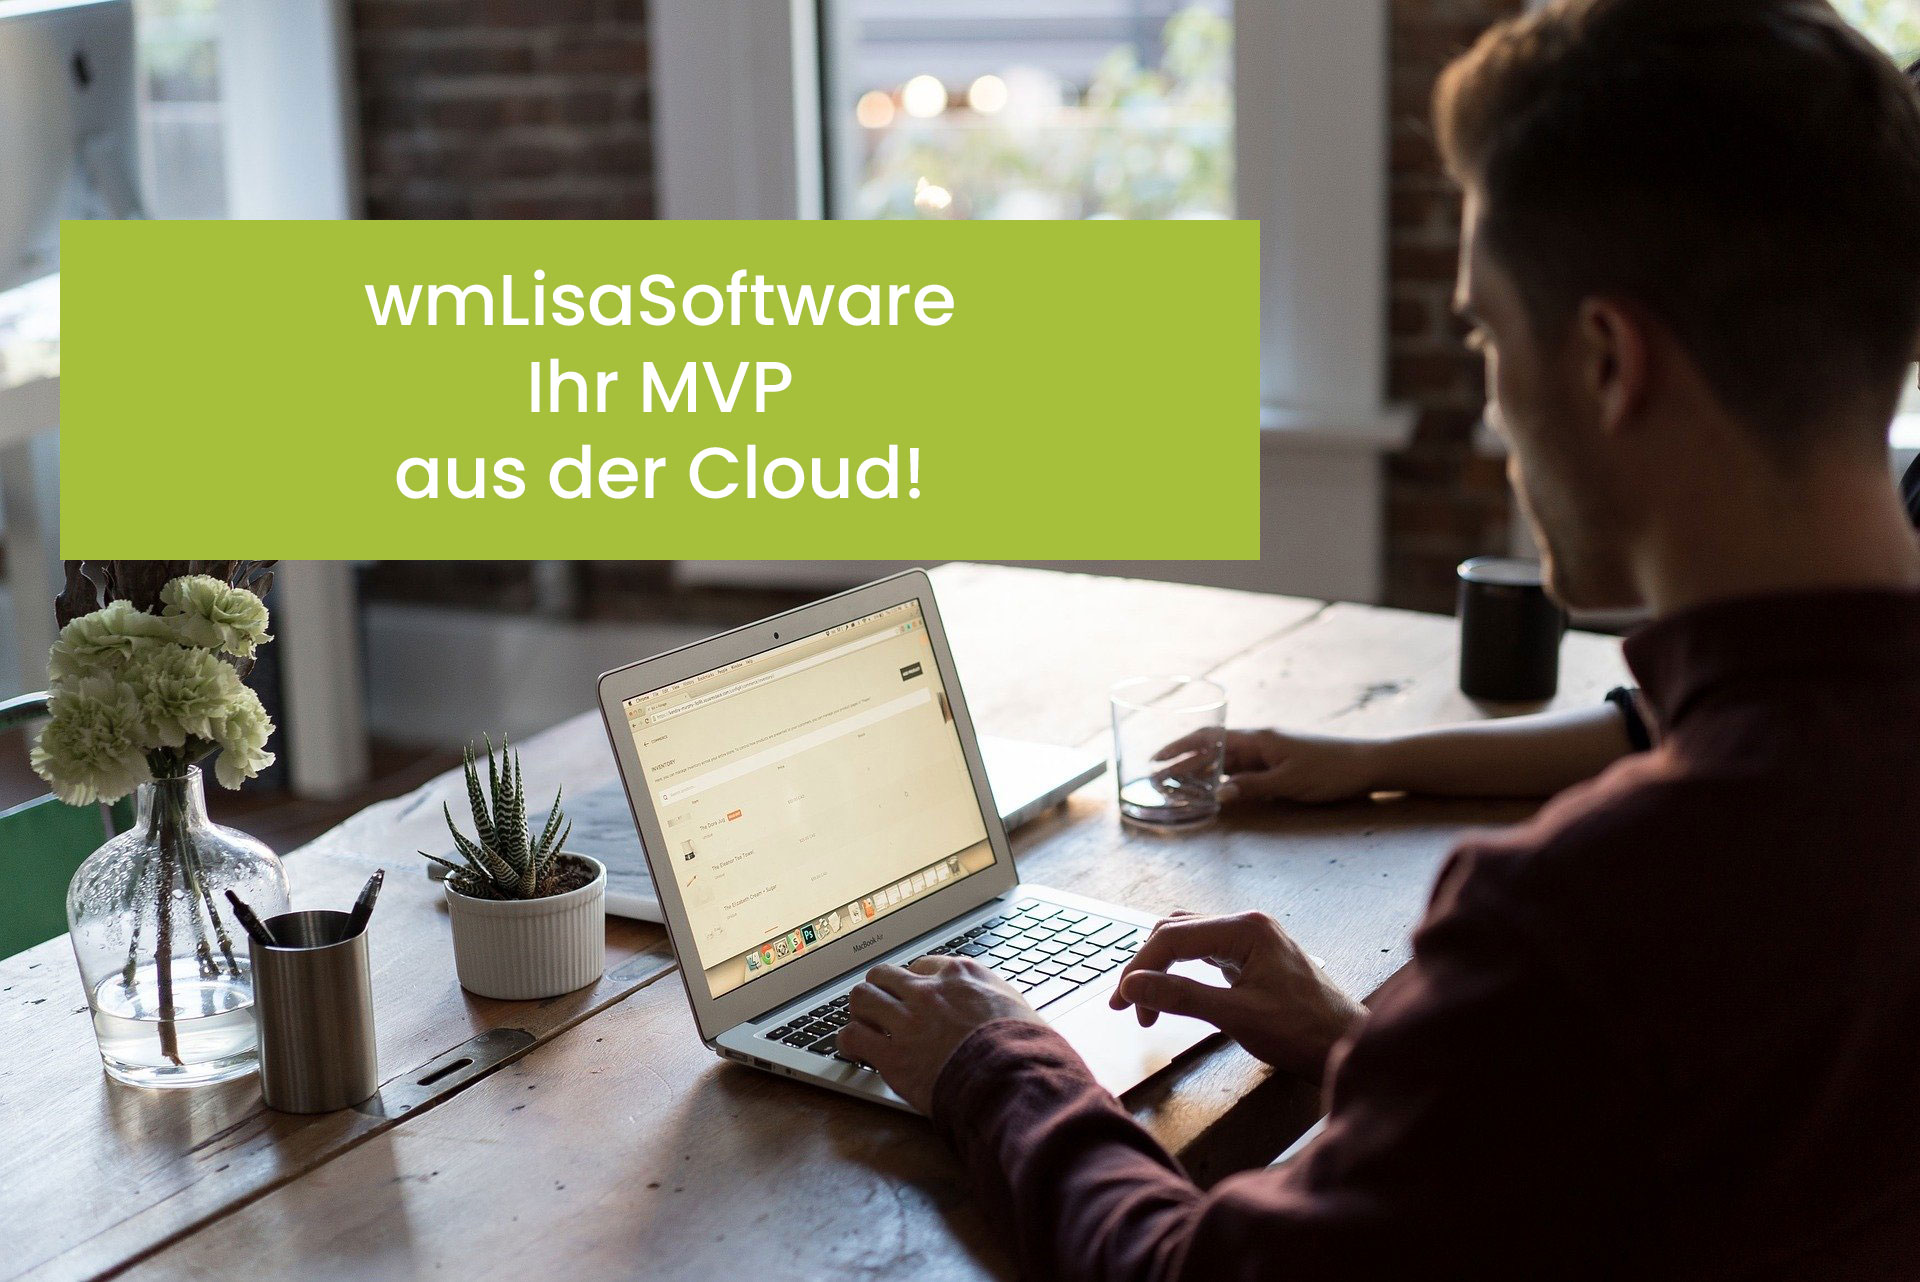 wm Lisa Software, Maklerverwaltungsprogramm aus der Cloud, Maklerverwaltungsprogramm, Maklerverwaltungssoftware, MVP